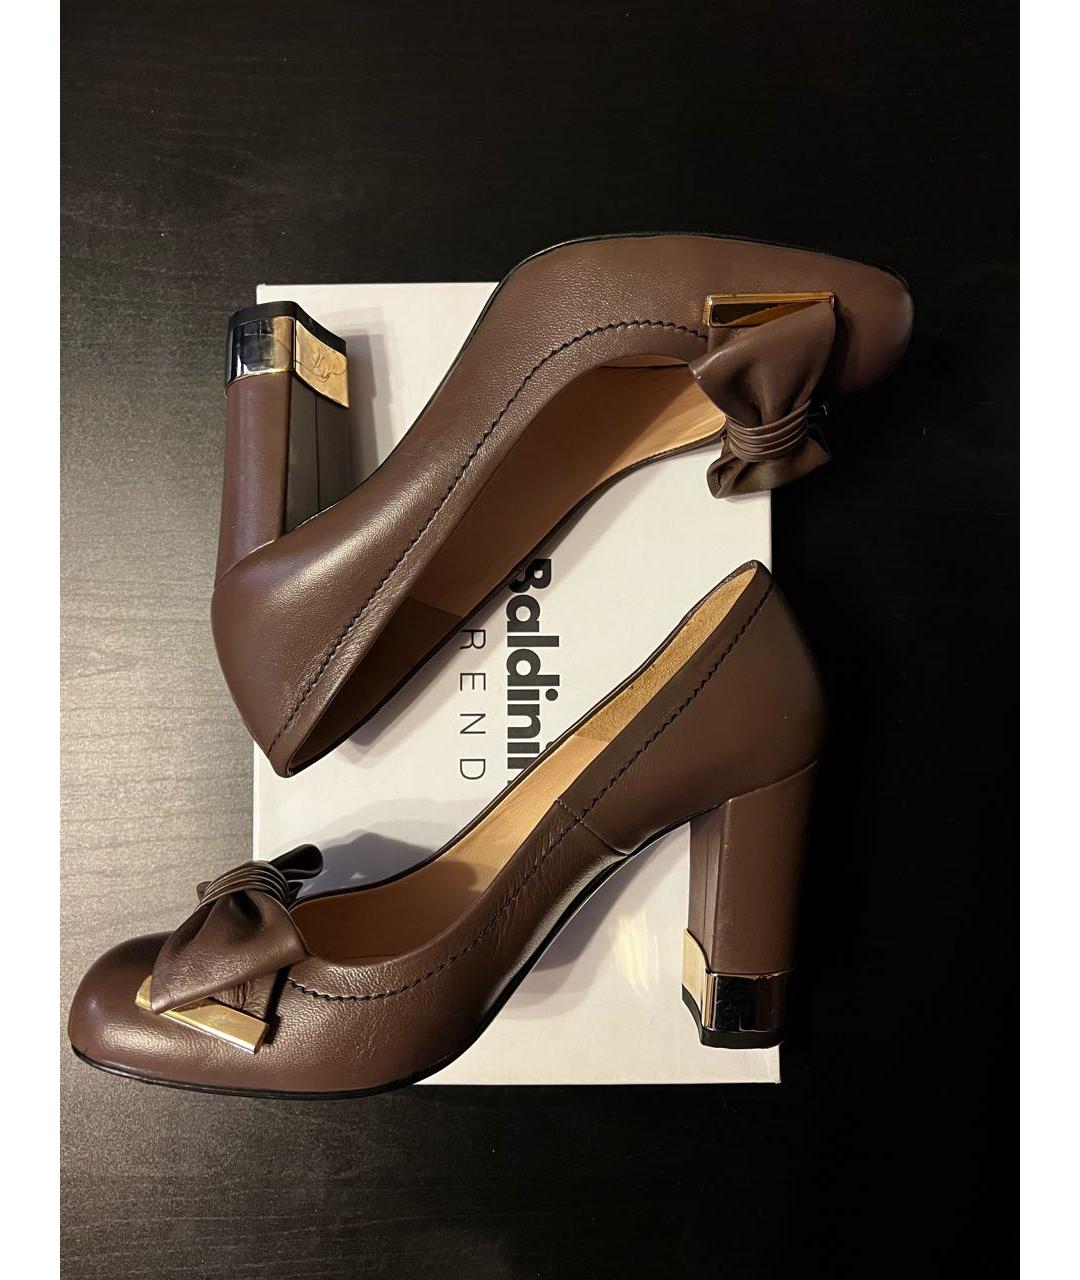 Туфли BALDININI для женщин купить за 10500 руб, арт. 879119 –  Интернет-магазин Oskelly